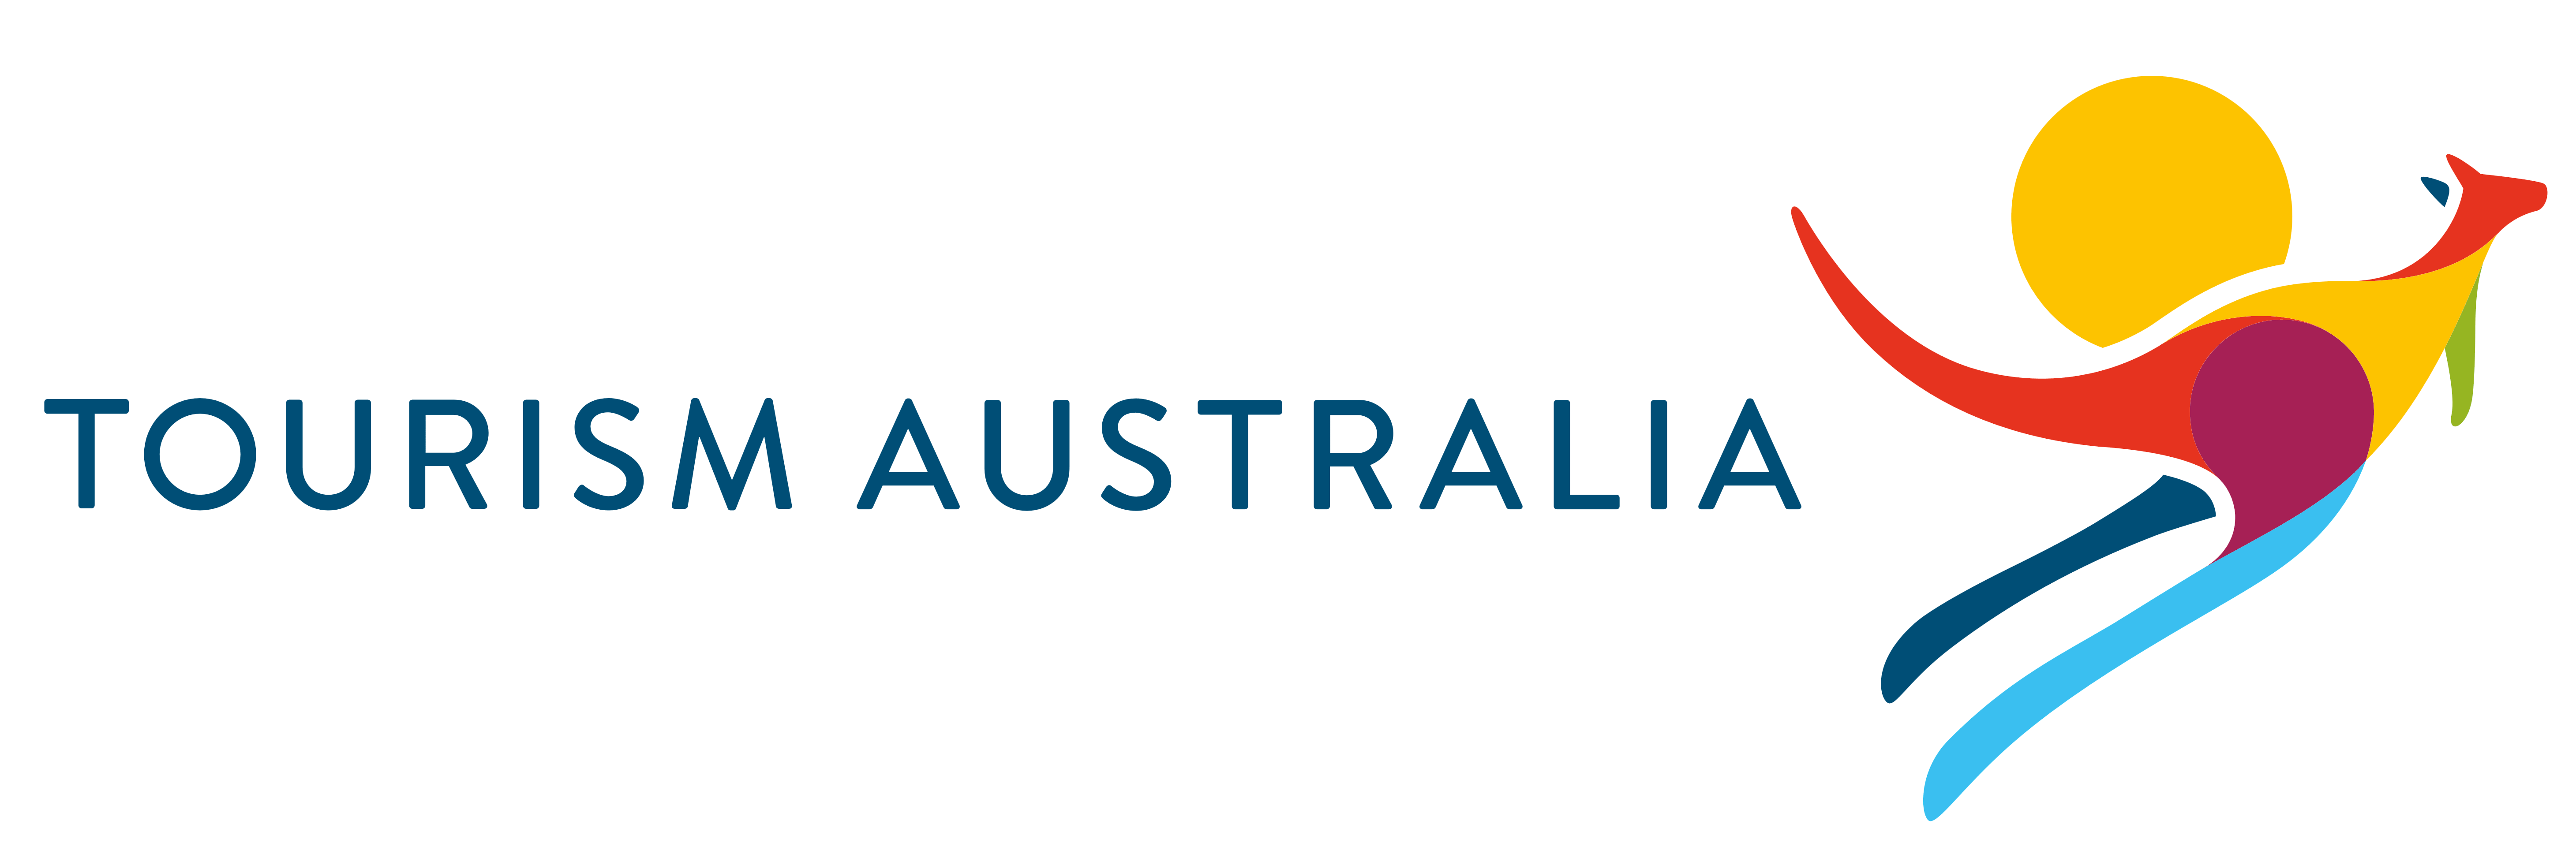 Tourism Australia Logo - Tourism Australia